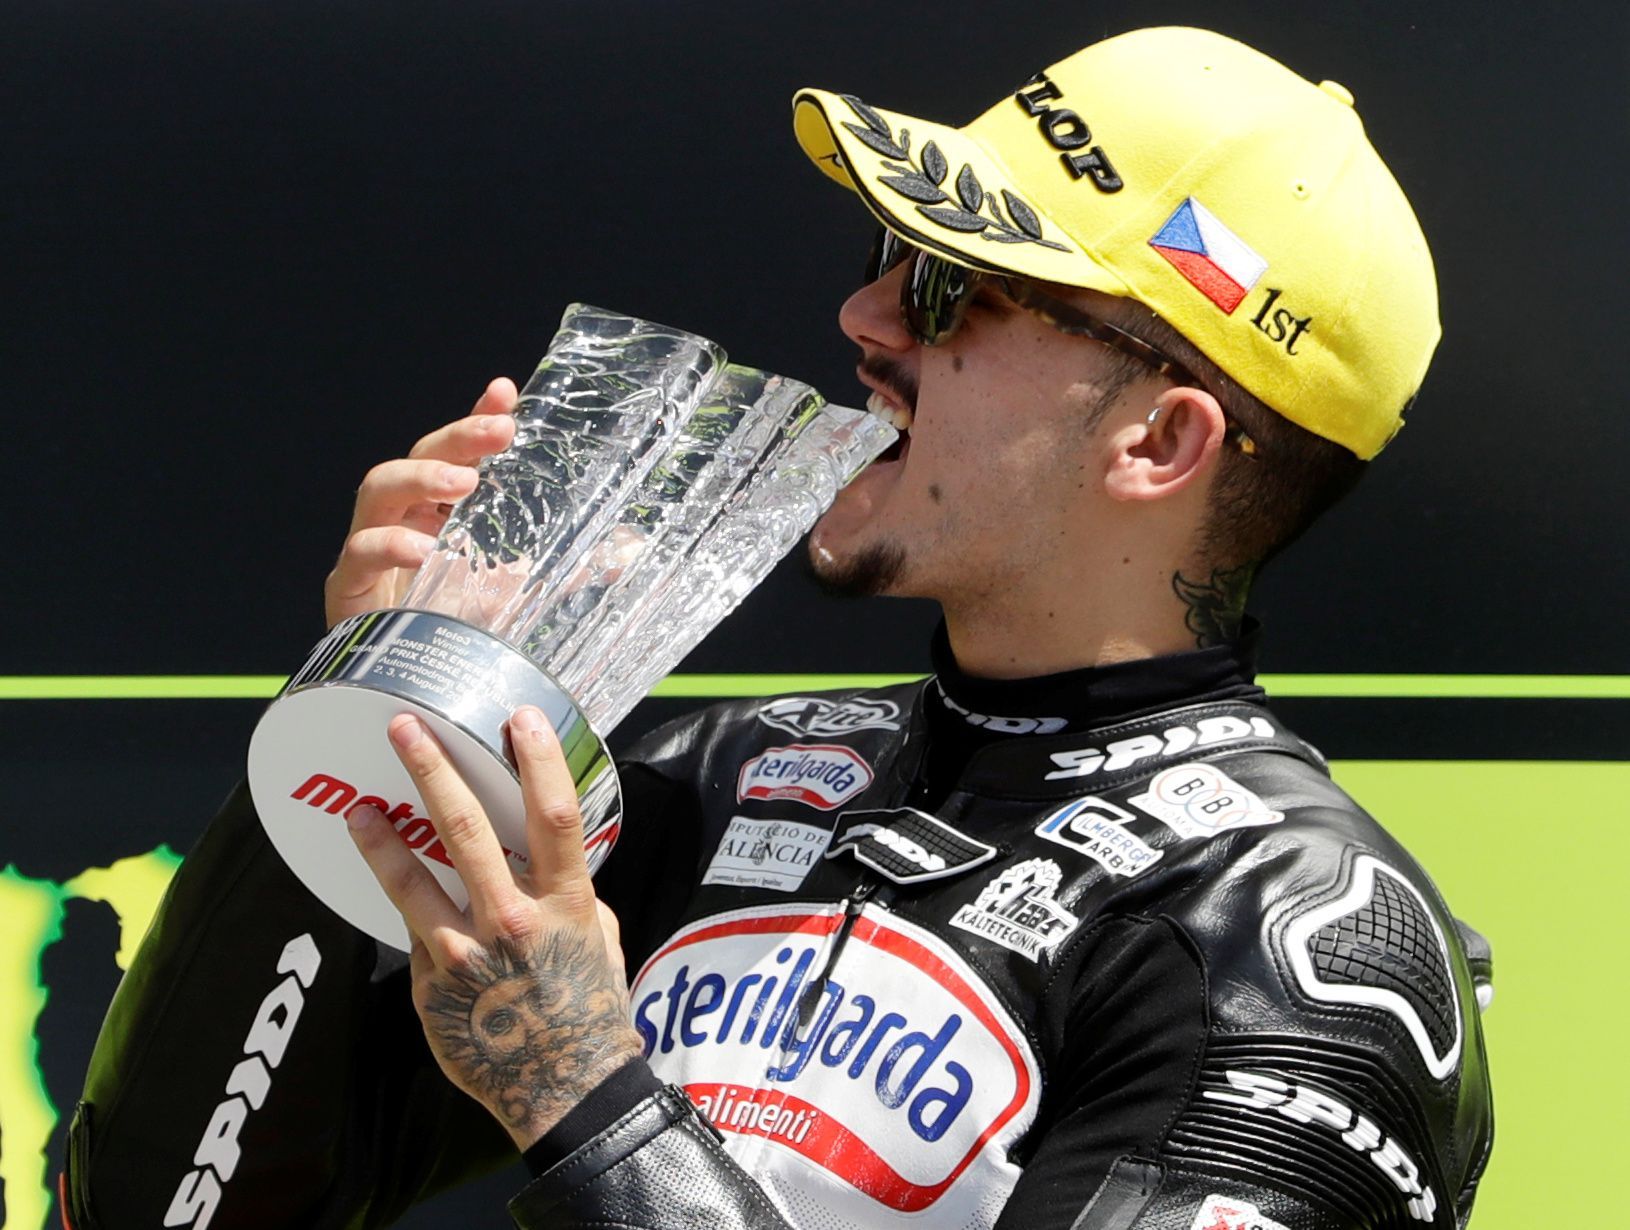 Aron Canet slaví vítězství ve Velké ceně ČR třídy Moto3 2019